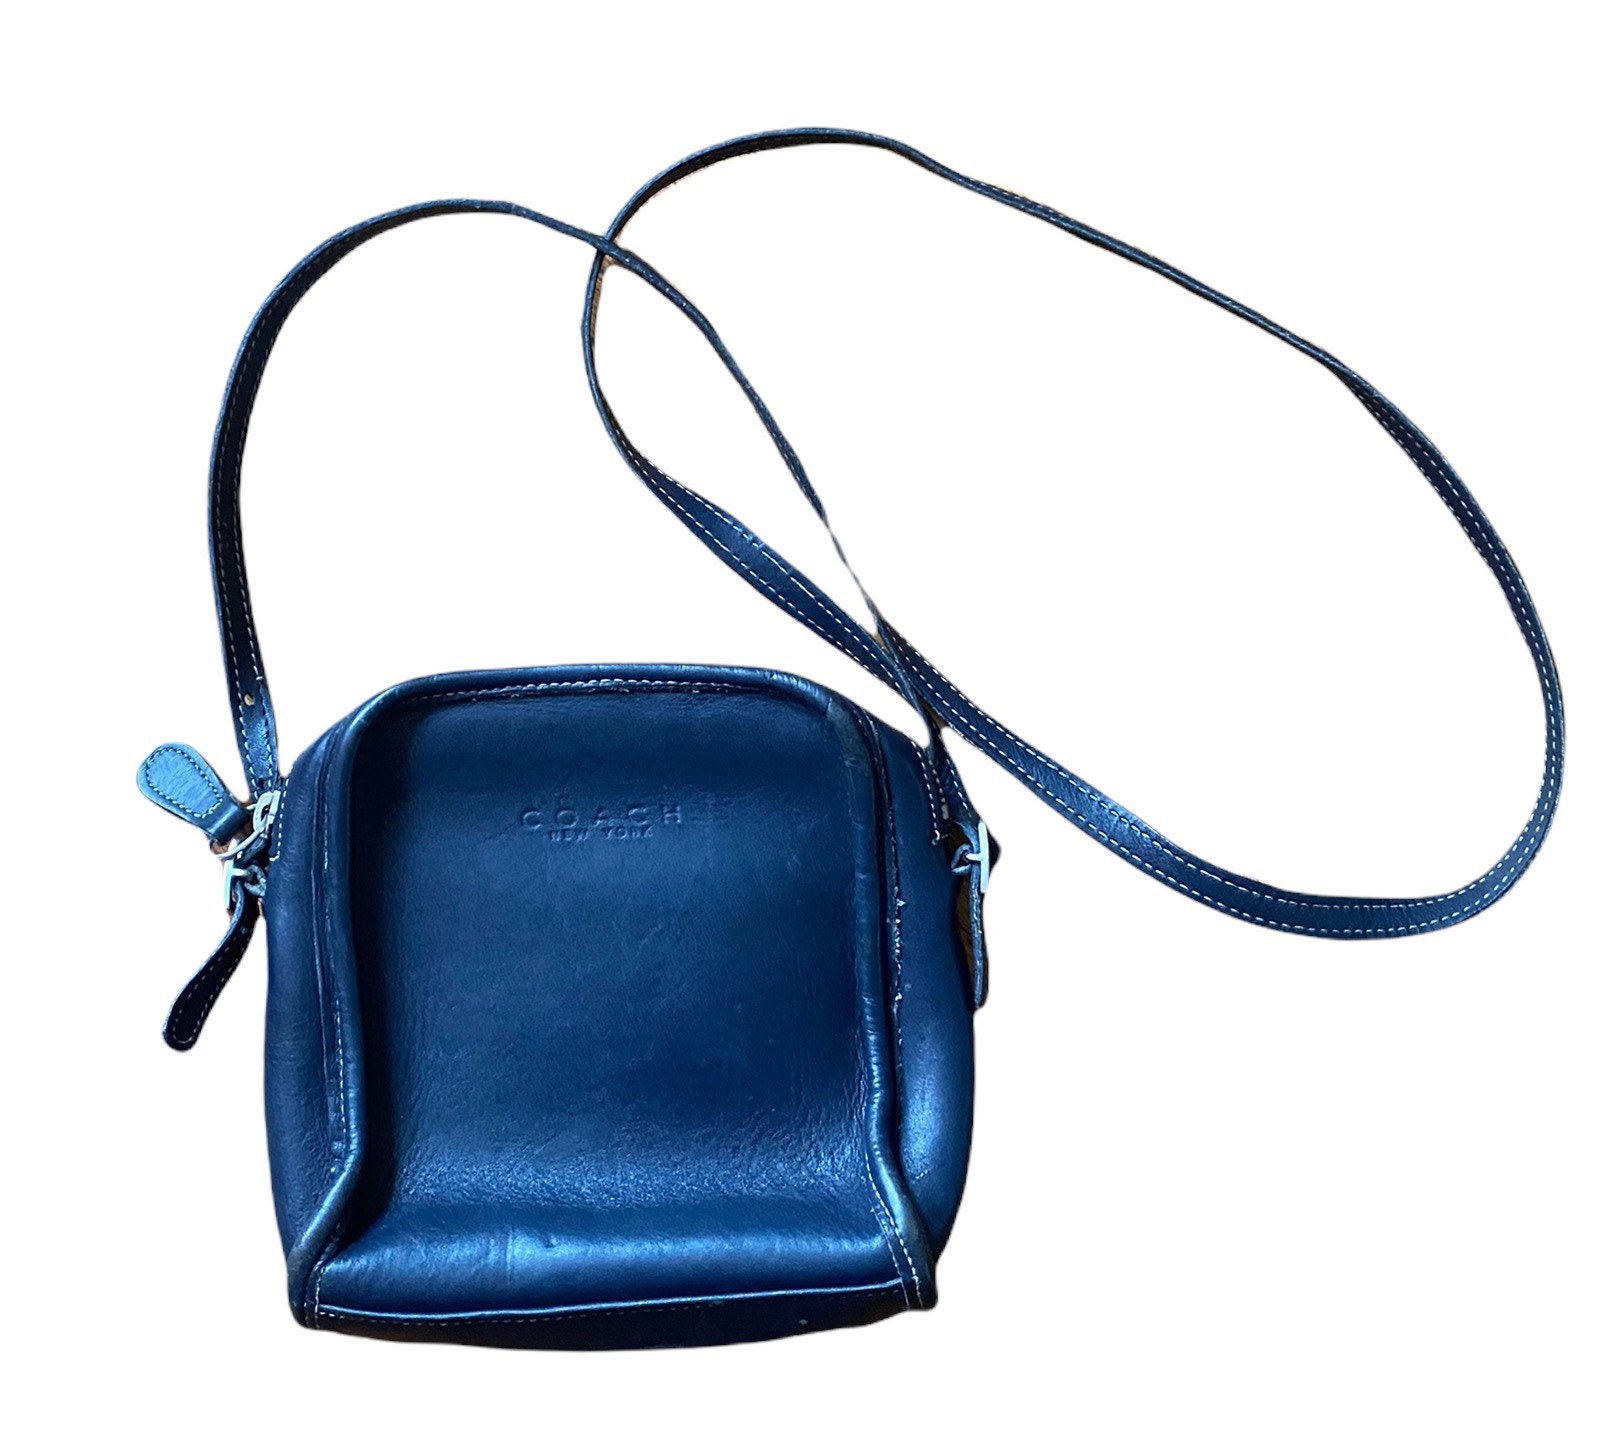 Etienne Aigner bag, Vintage 70s purse, blue leather handbag, Navy Blue  purse, 1970s Shoulder Bag, blue leather Satchel, fold over handbag,